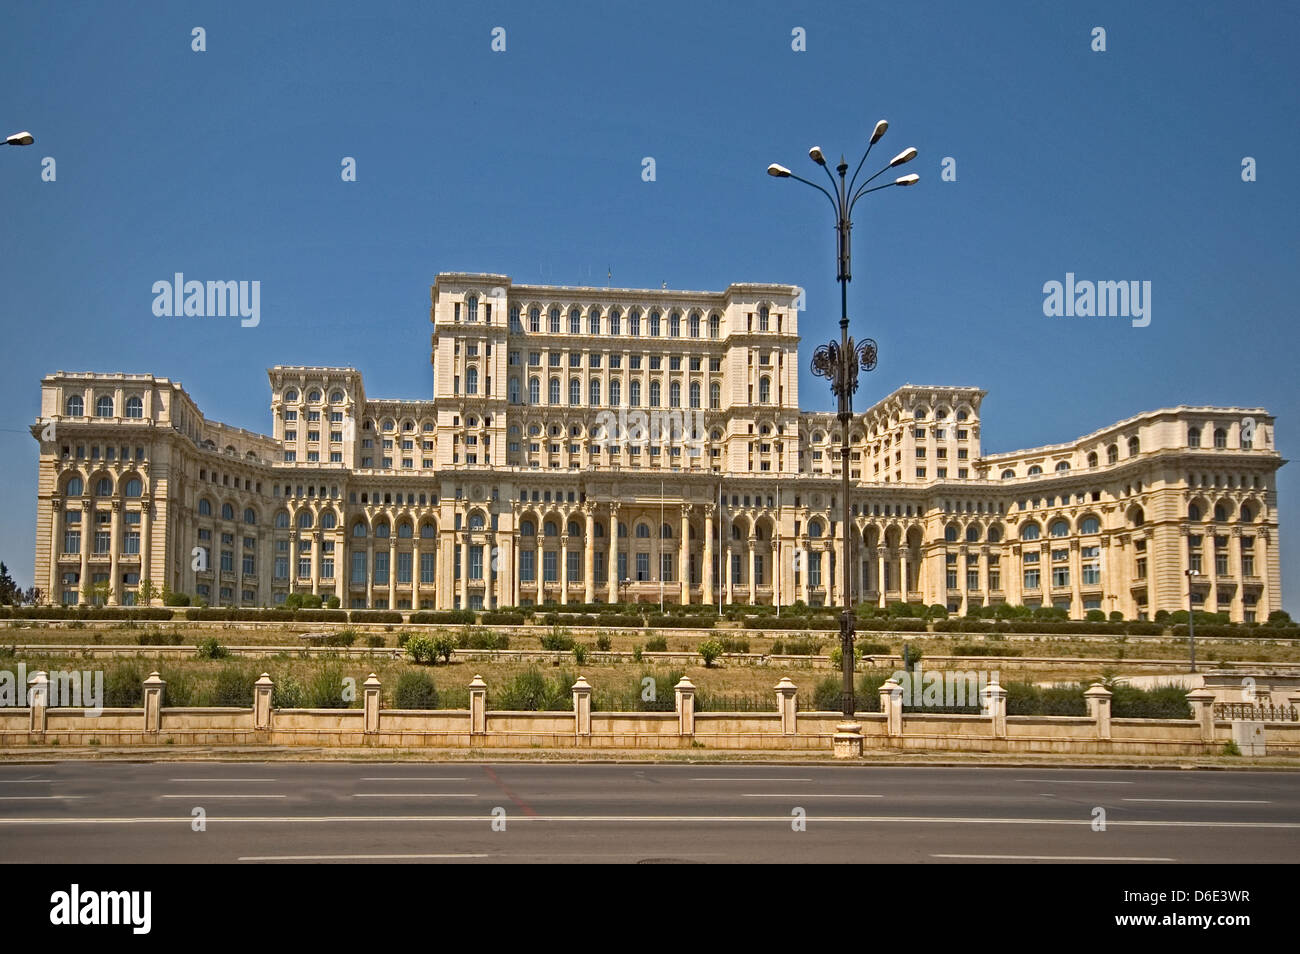 Europa, Rumänien, Bukarest, Parlamentsgebäude das Ceausescu Palast war und ist das zweitgrößte Gebäude der Welt Stockfoto